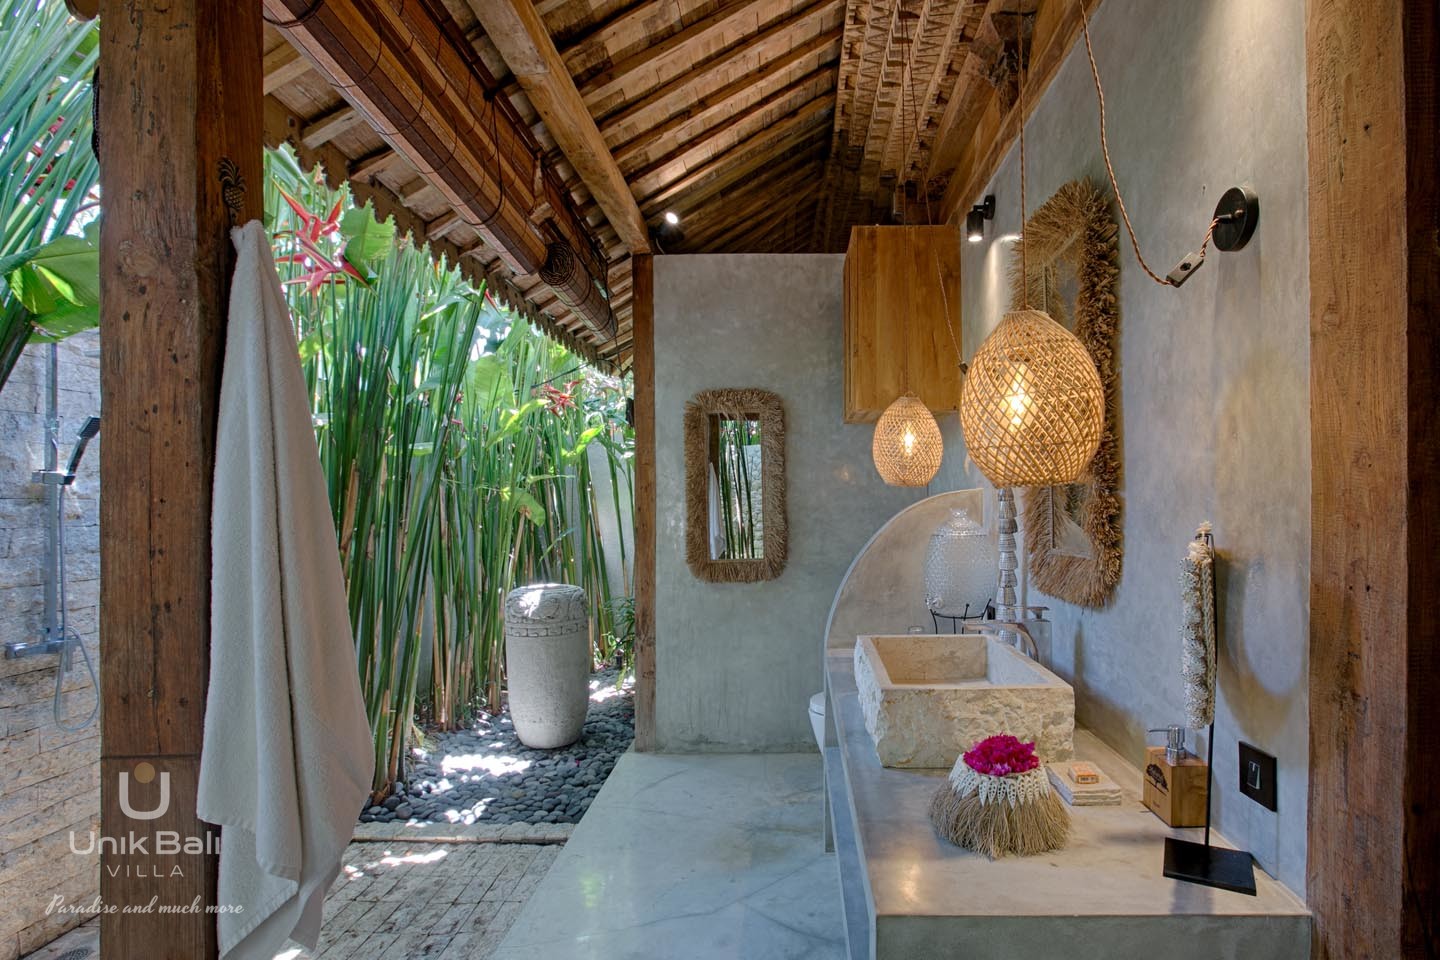 unik-bali-villa-for-rent-matanai-tropicale-private-bathroom-shower